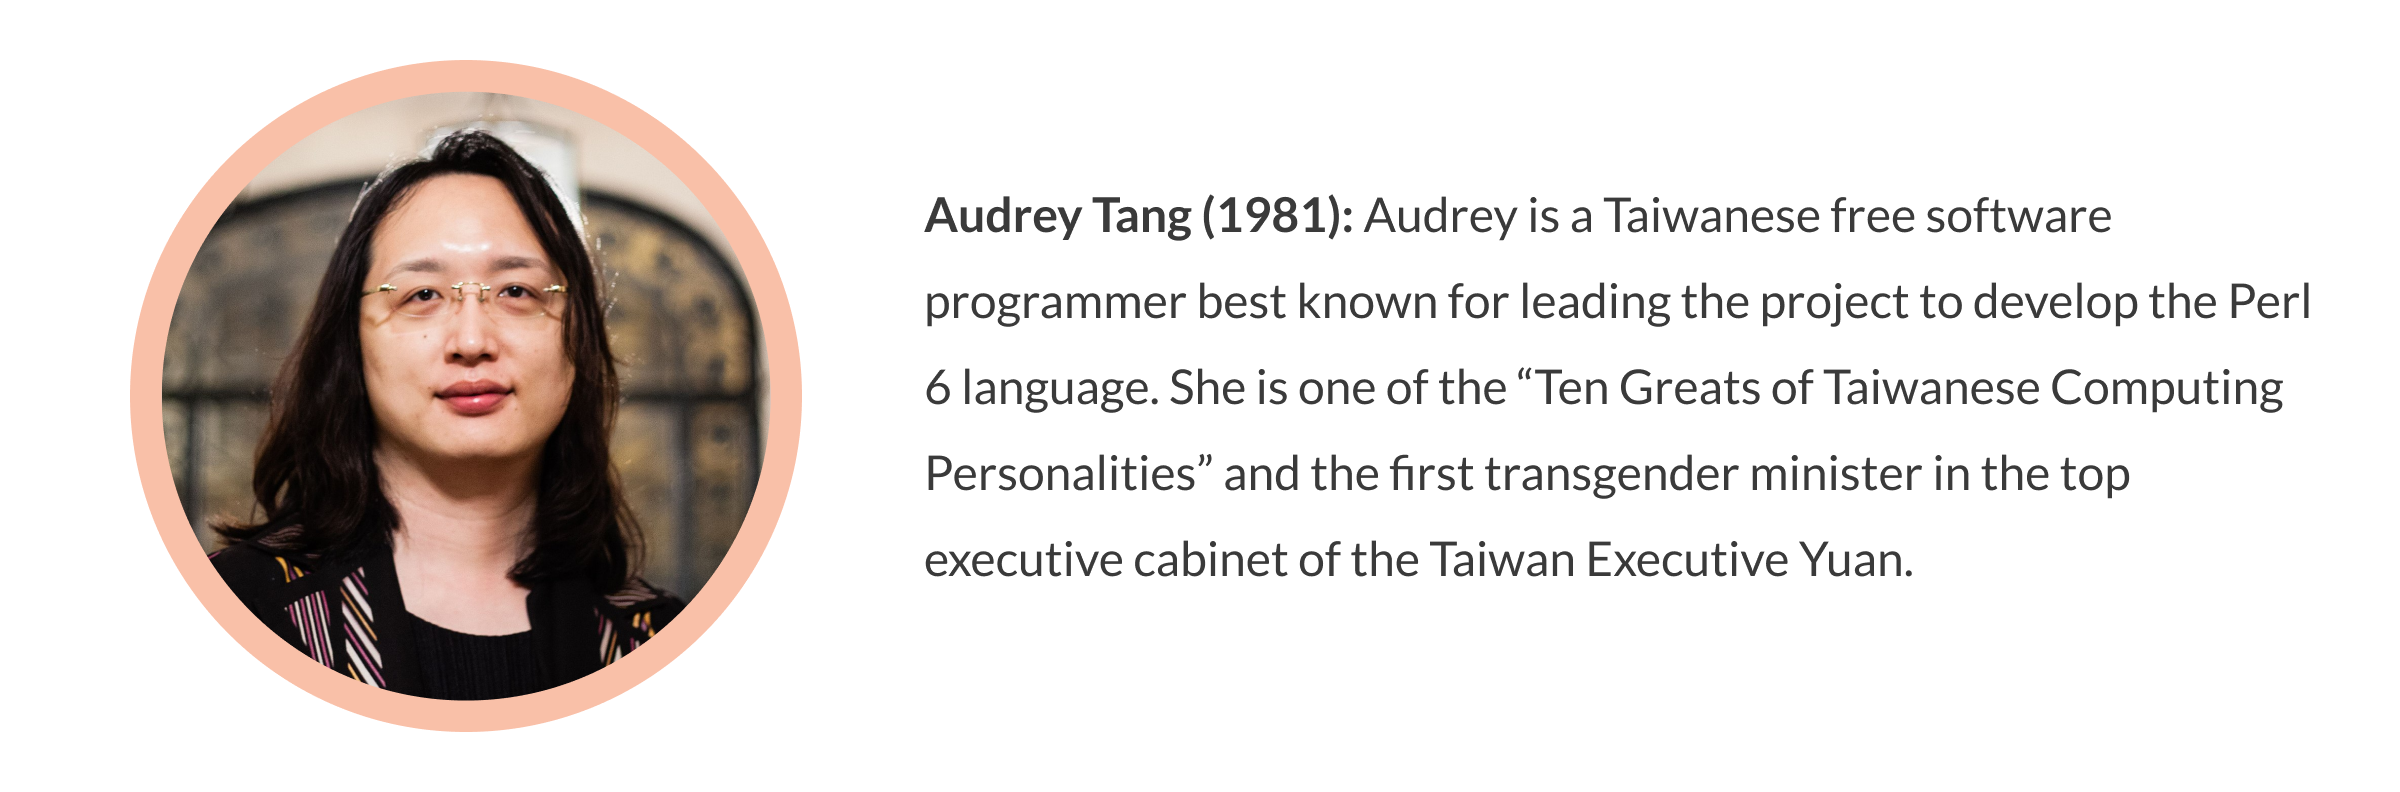 Audrey Tang 1